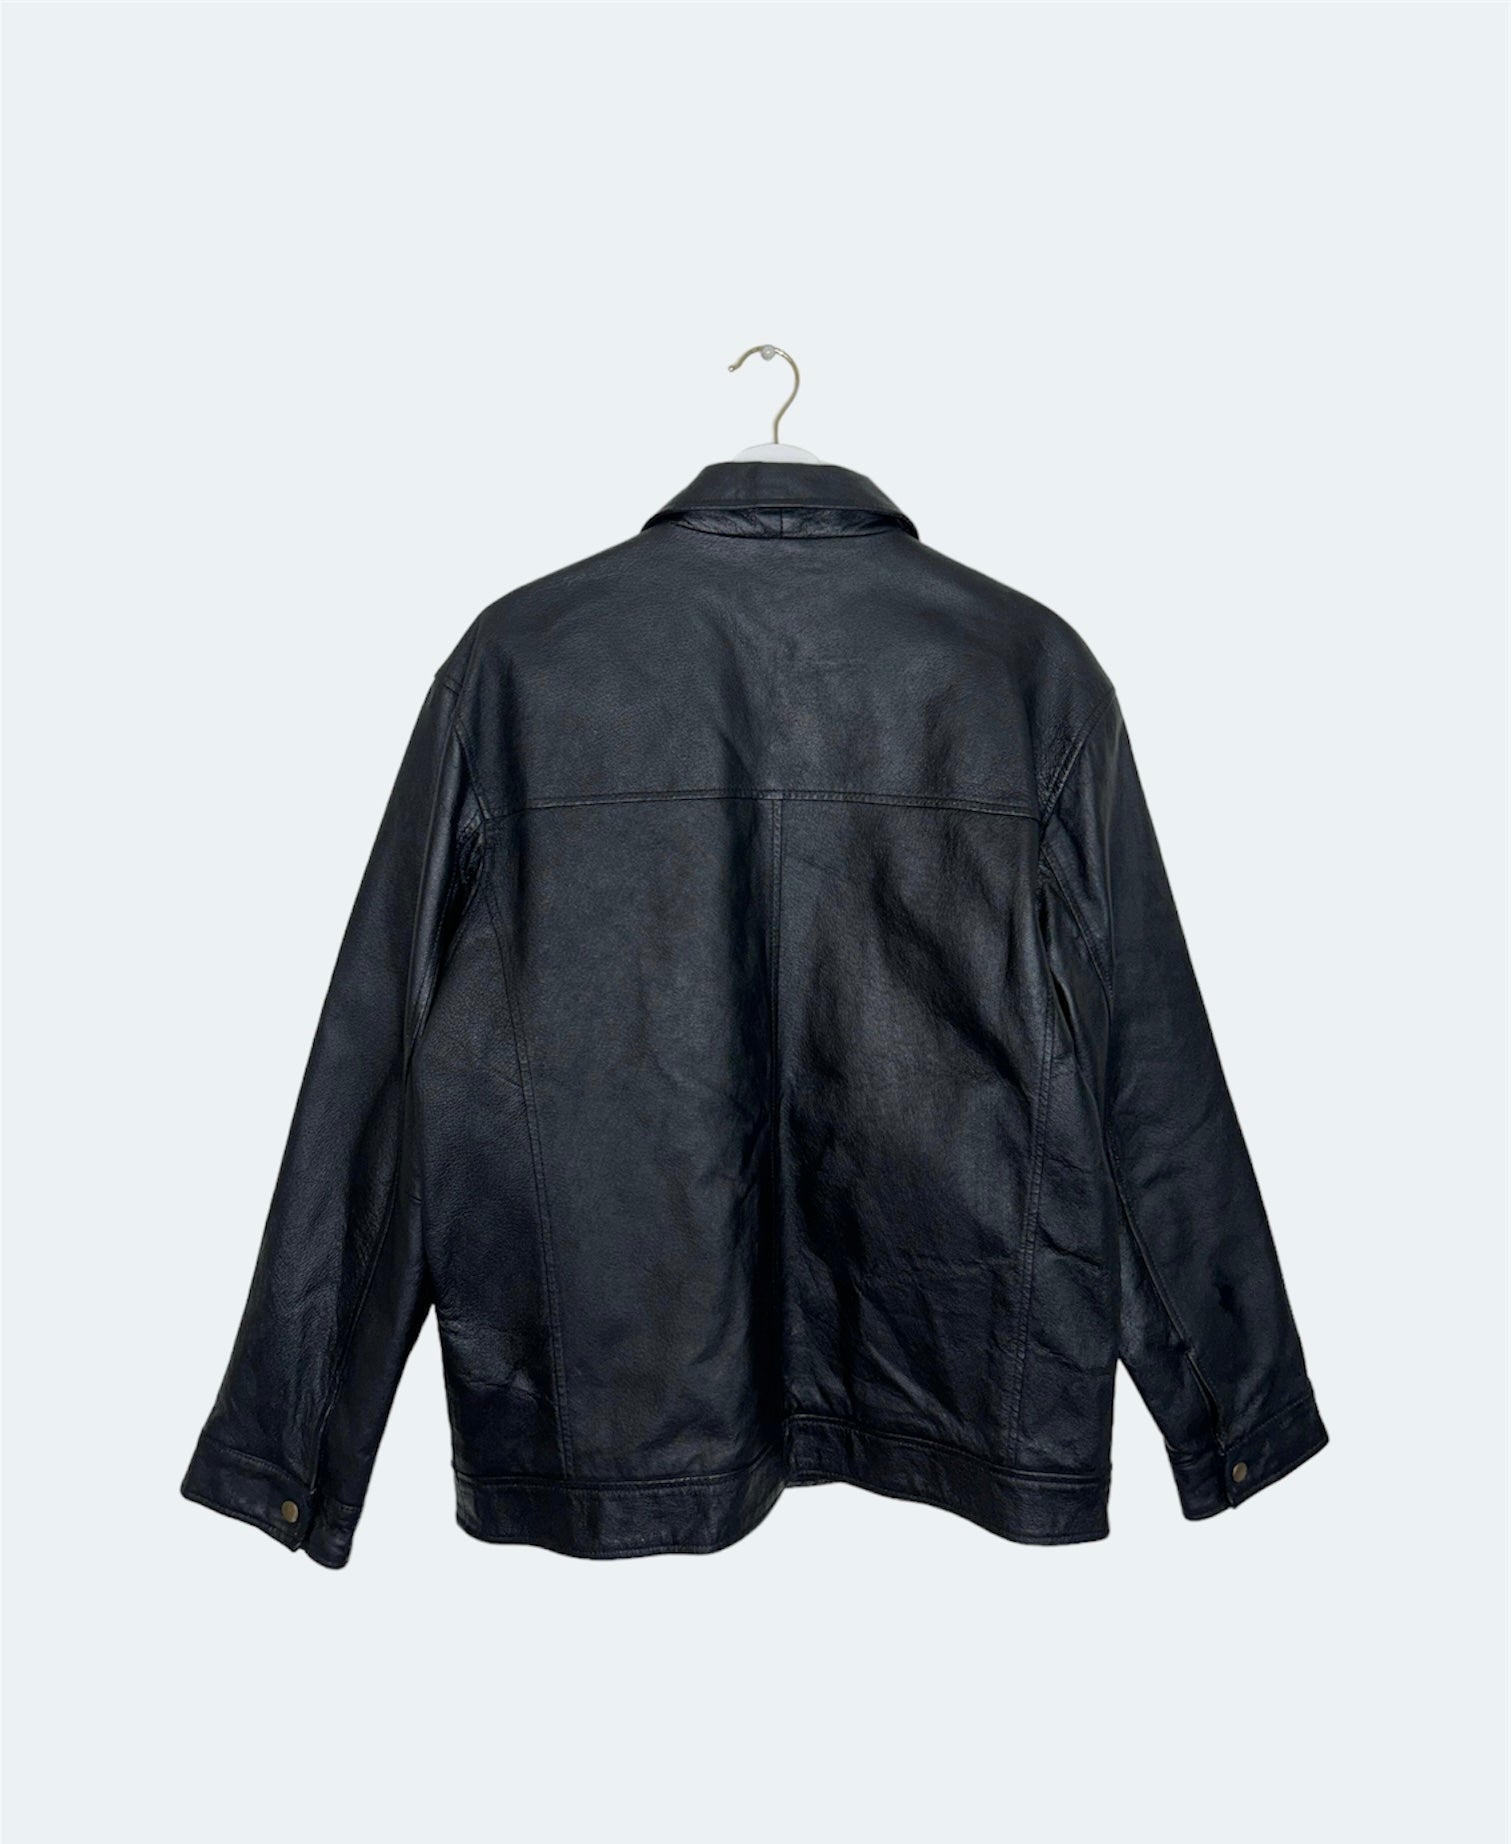 back of black leather vintage bomber jacket 